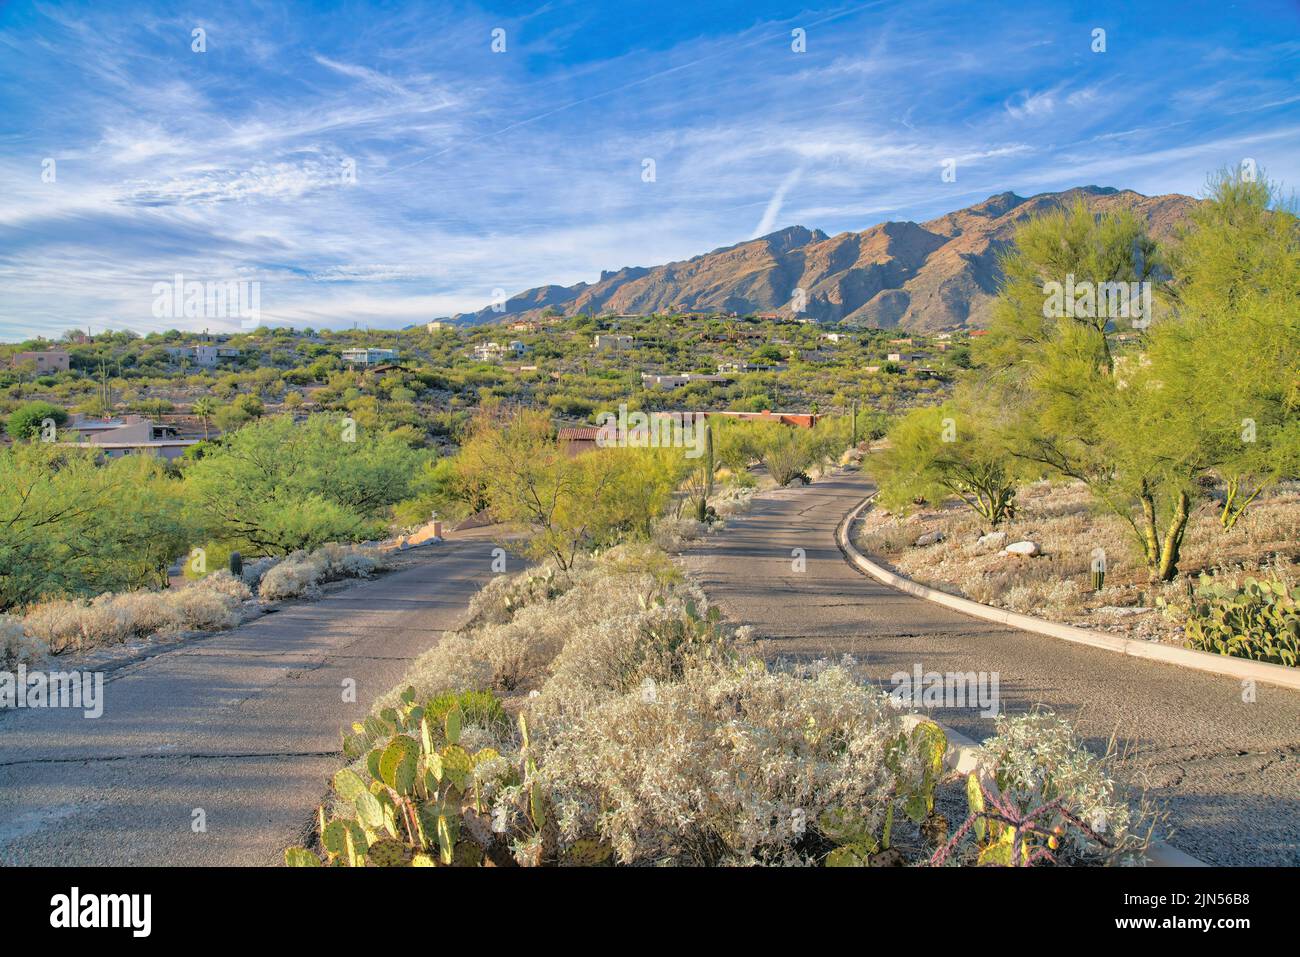 Kakteen und Sträucher in der Mitte der zweispurigen Straße in Tucson, Arizona. Zweispurige Betonstraße mit Risslinie gegen den Blick auf eine schräge Nachbarschaft Stockfoto